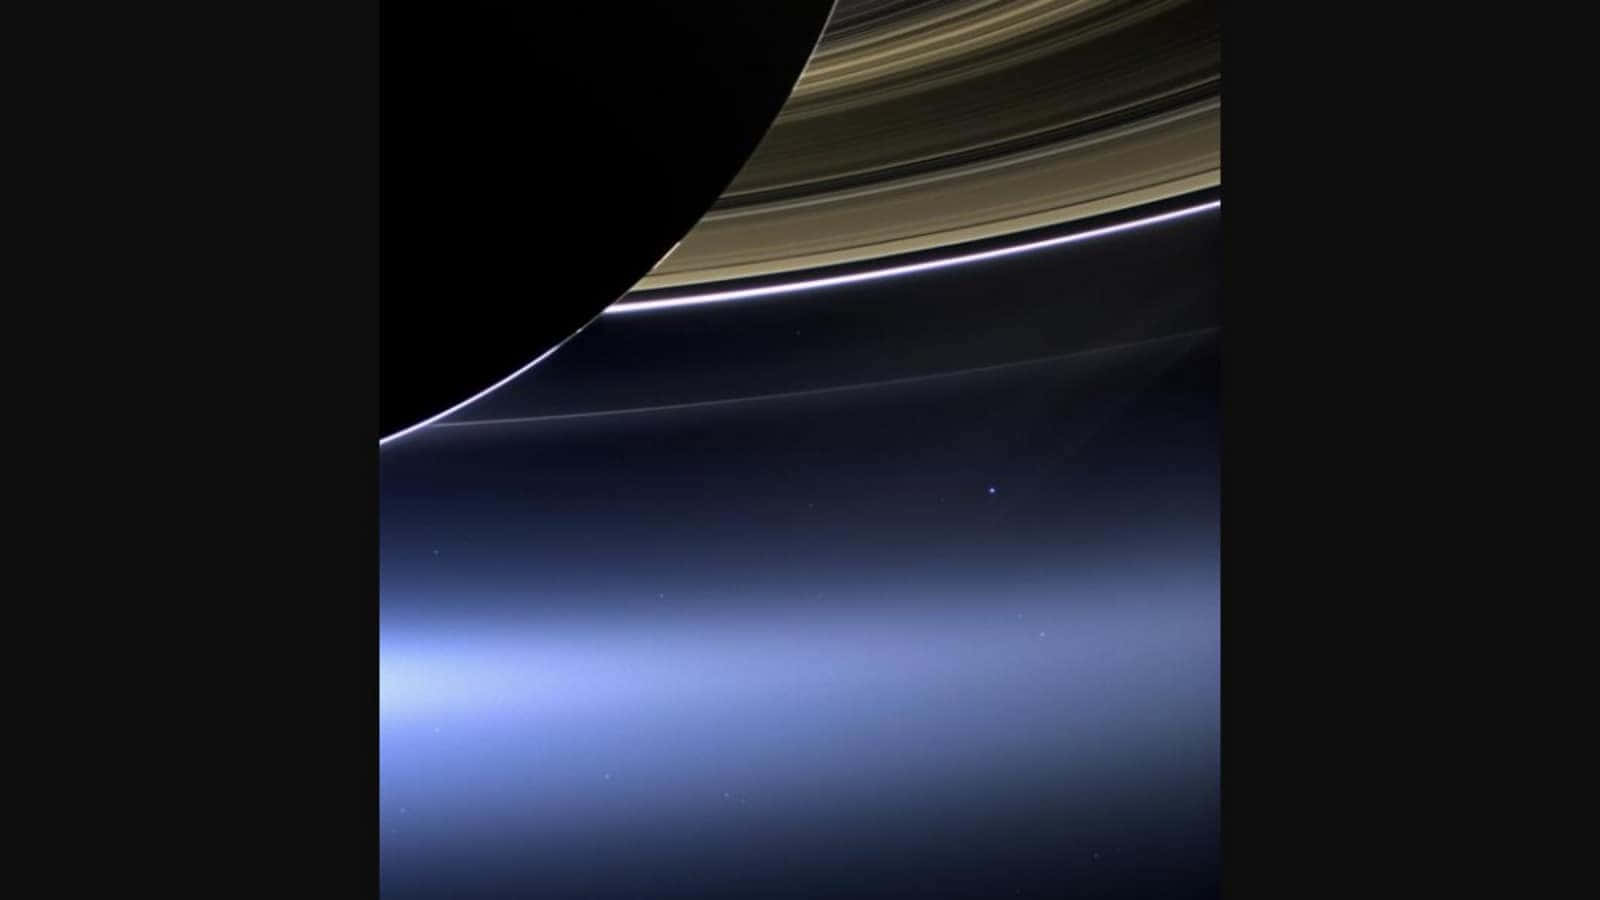 Magnificent Saturn